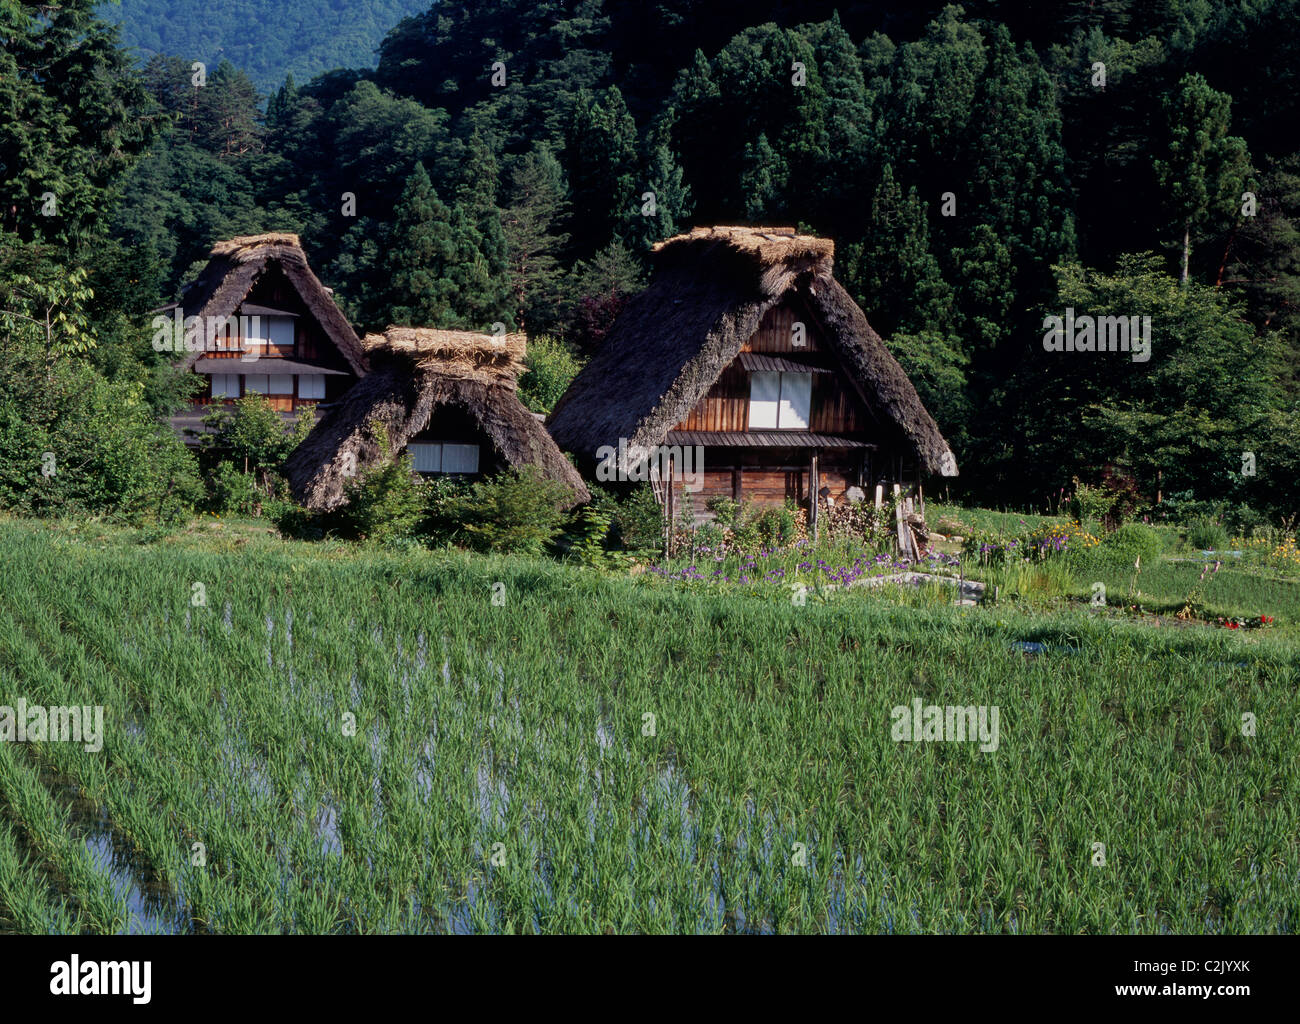 Village and Rice Paddy at Shirakawa-go, Shirakawa, Ono, Gifu, Japan Stock Photo